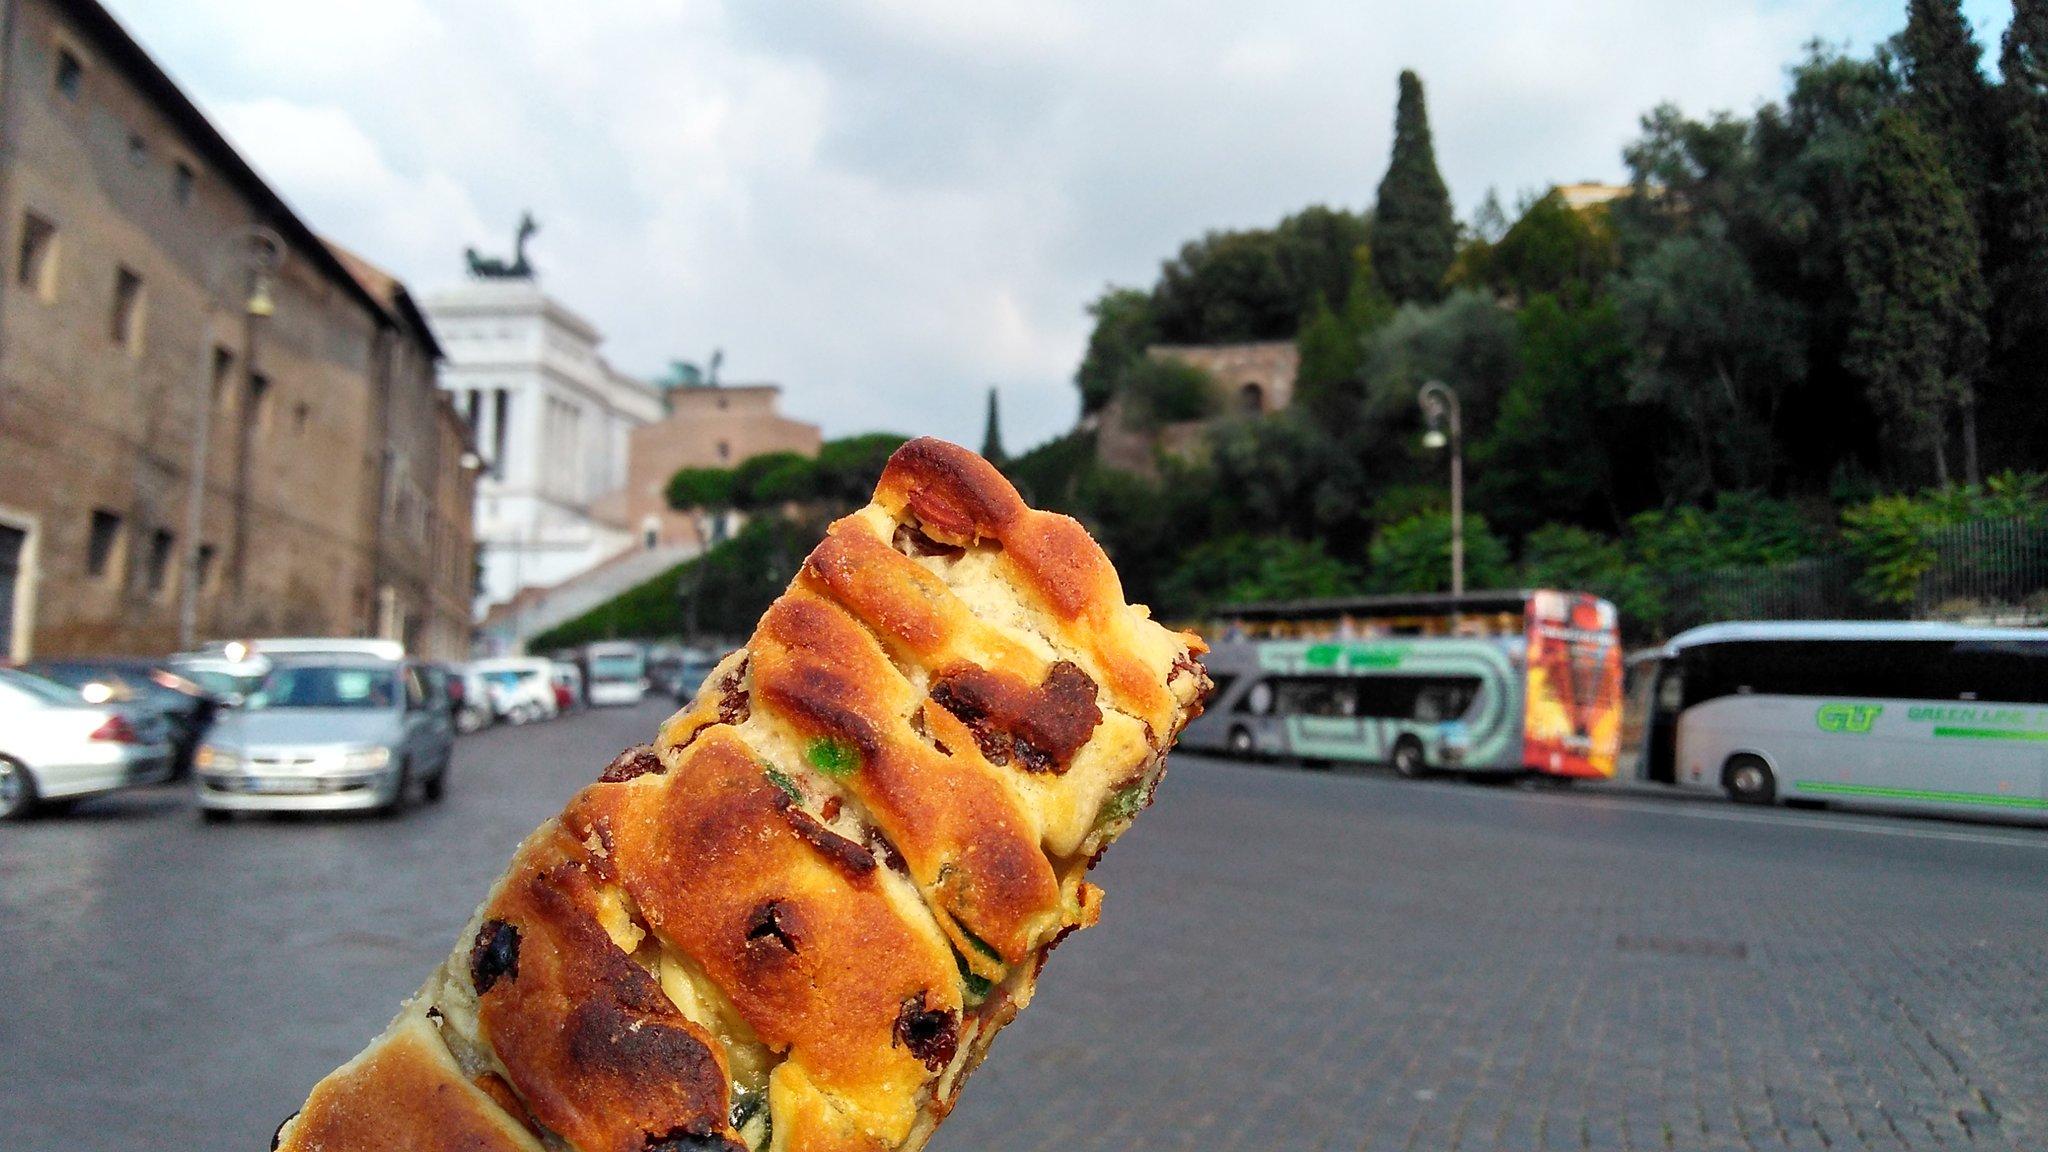 Don’t miss the ‘pizza ebraica‘ from Boccione in Rome’s Jewish quarter